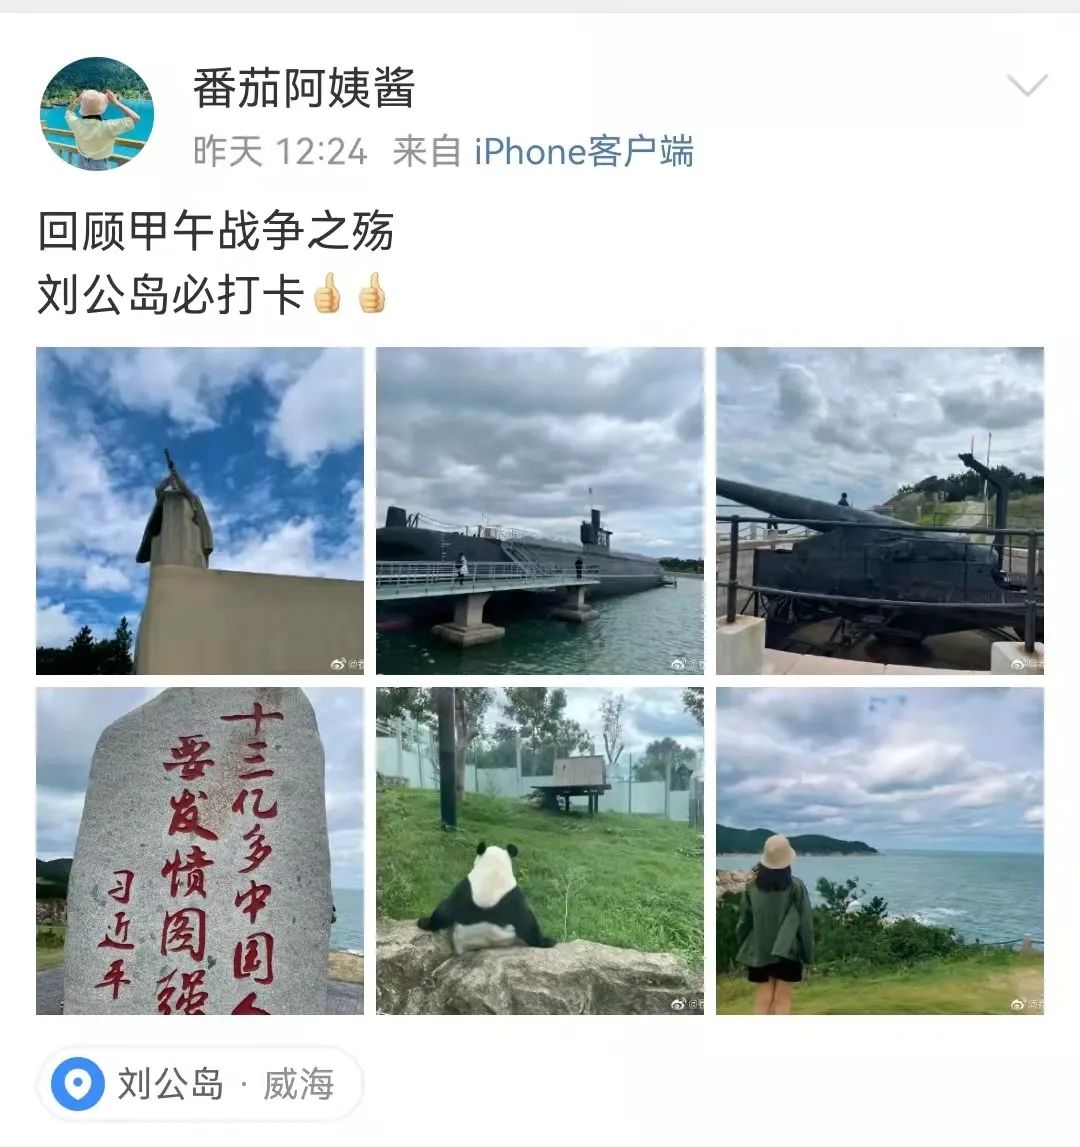 威海刘公岛上榜“2021国庆假期山东省TOP10热门景区”